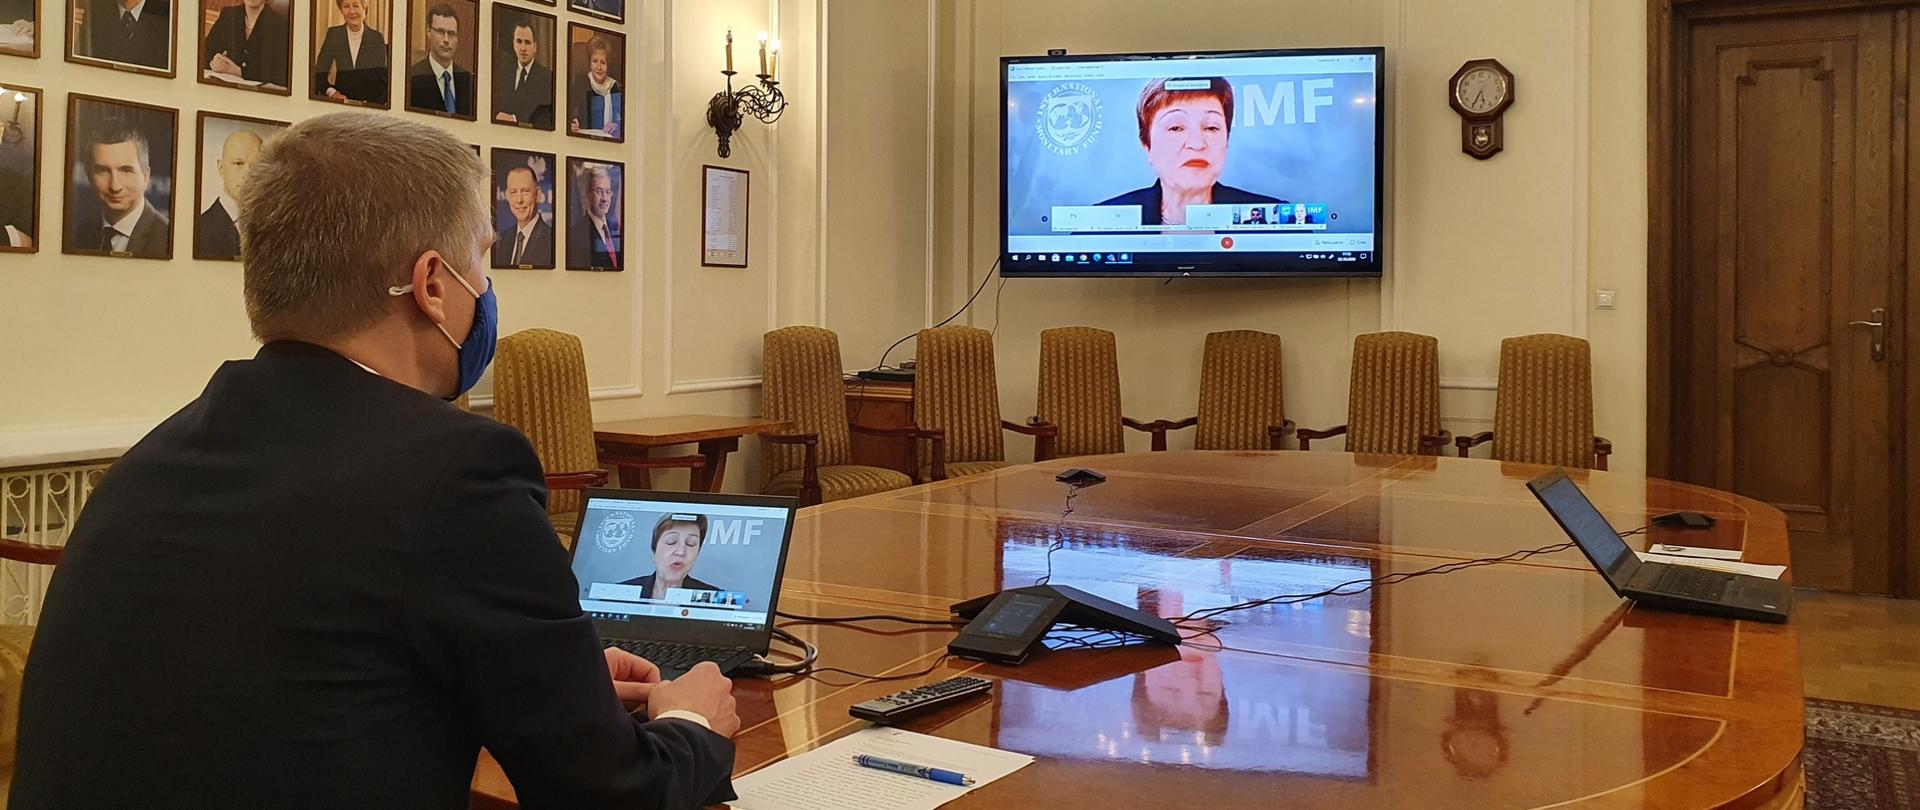 Wiceminister Piotr Nowak bierze udział w wideokonferencji. Wiceminister siedzi przy stole, przed nim komputer.